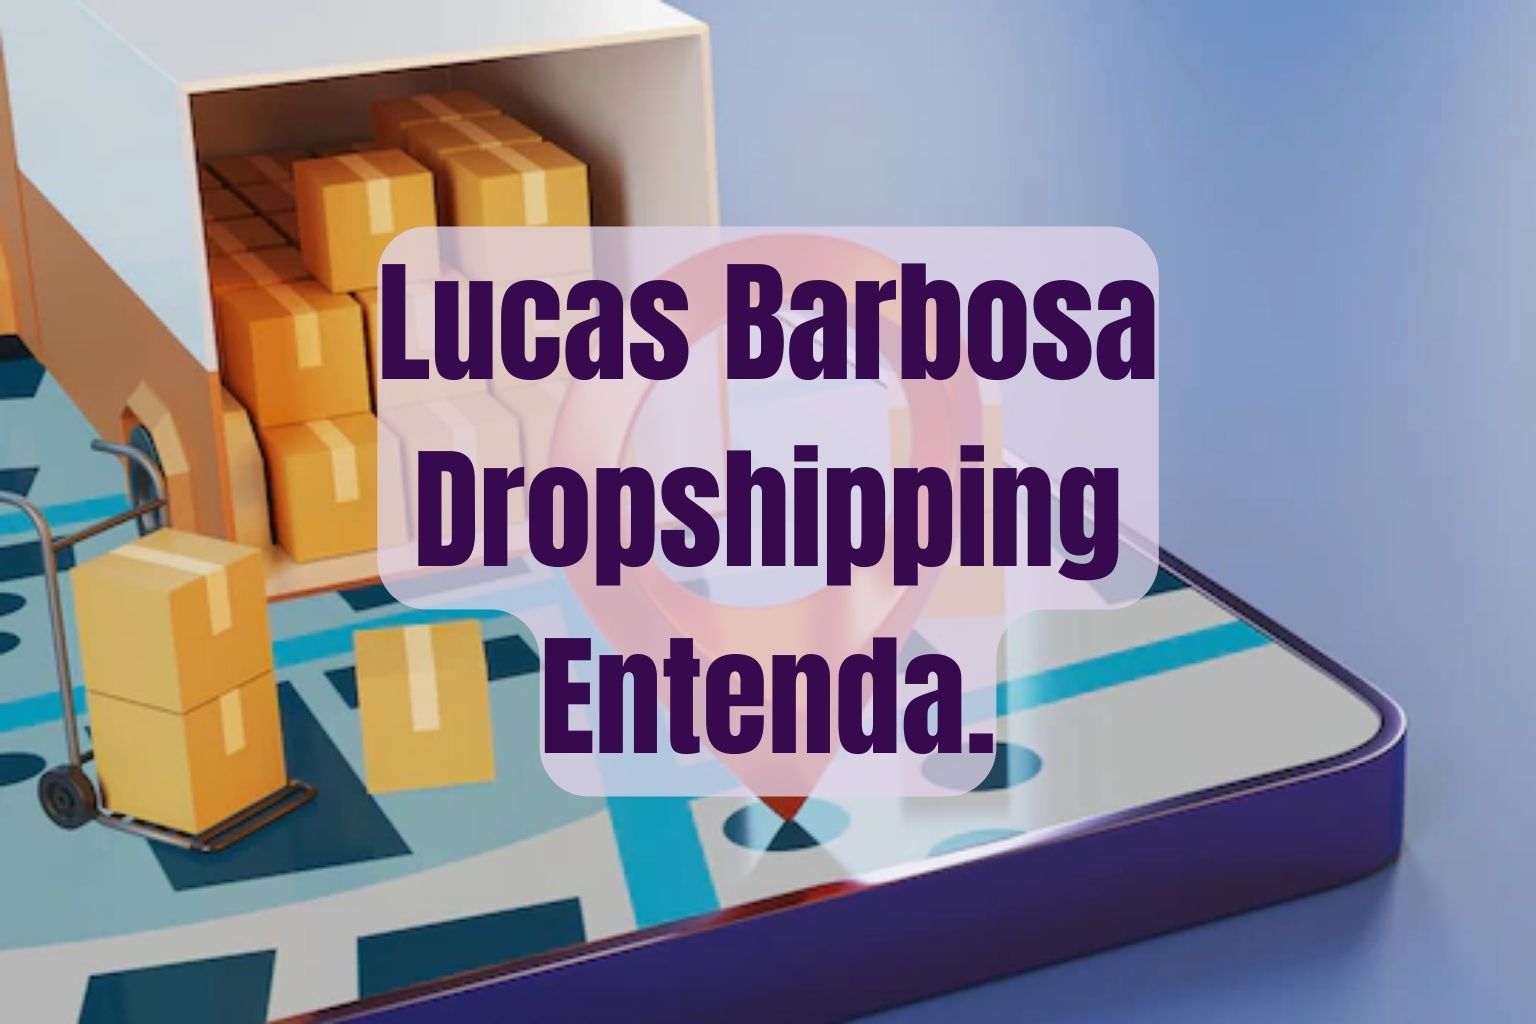 Lucas Barbosa Dropshipping: Quem é? Curso, Site, e CNPJ